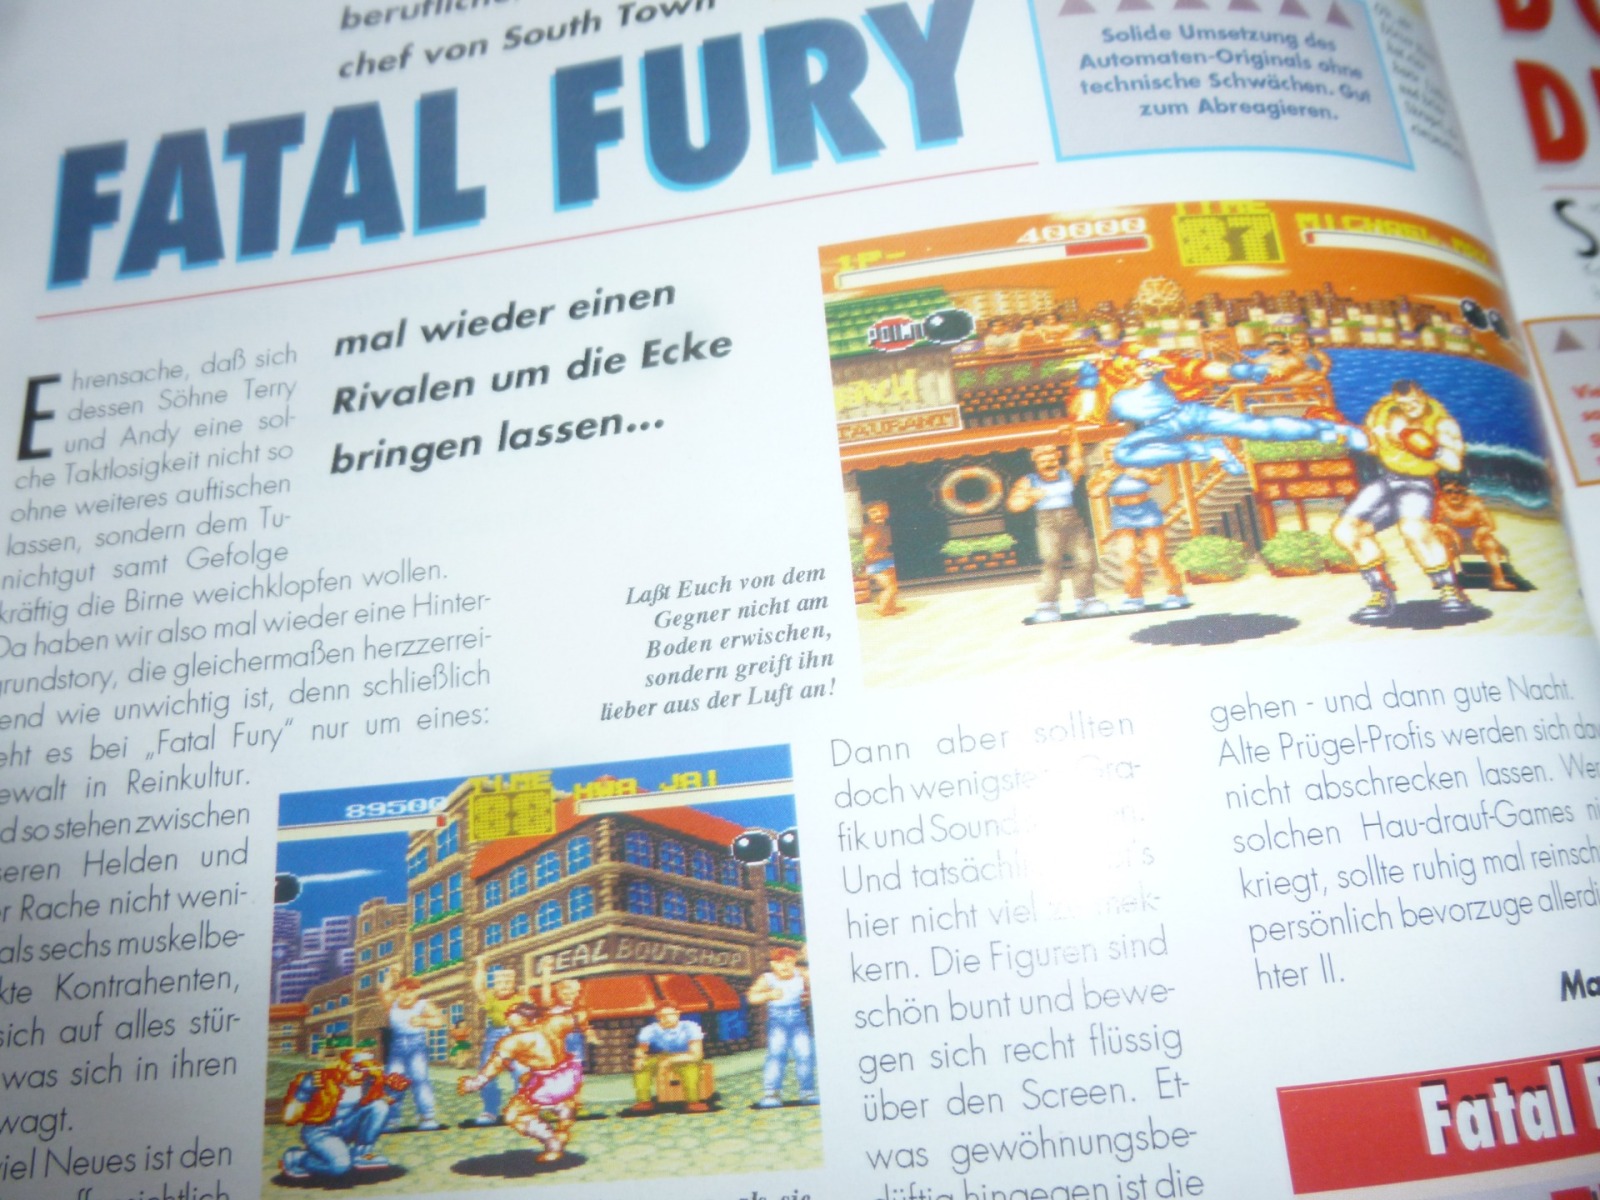 TOTAL Das unabhängige Magazin - 100 Nintendo - Ausgabe 7/93 1993 28